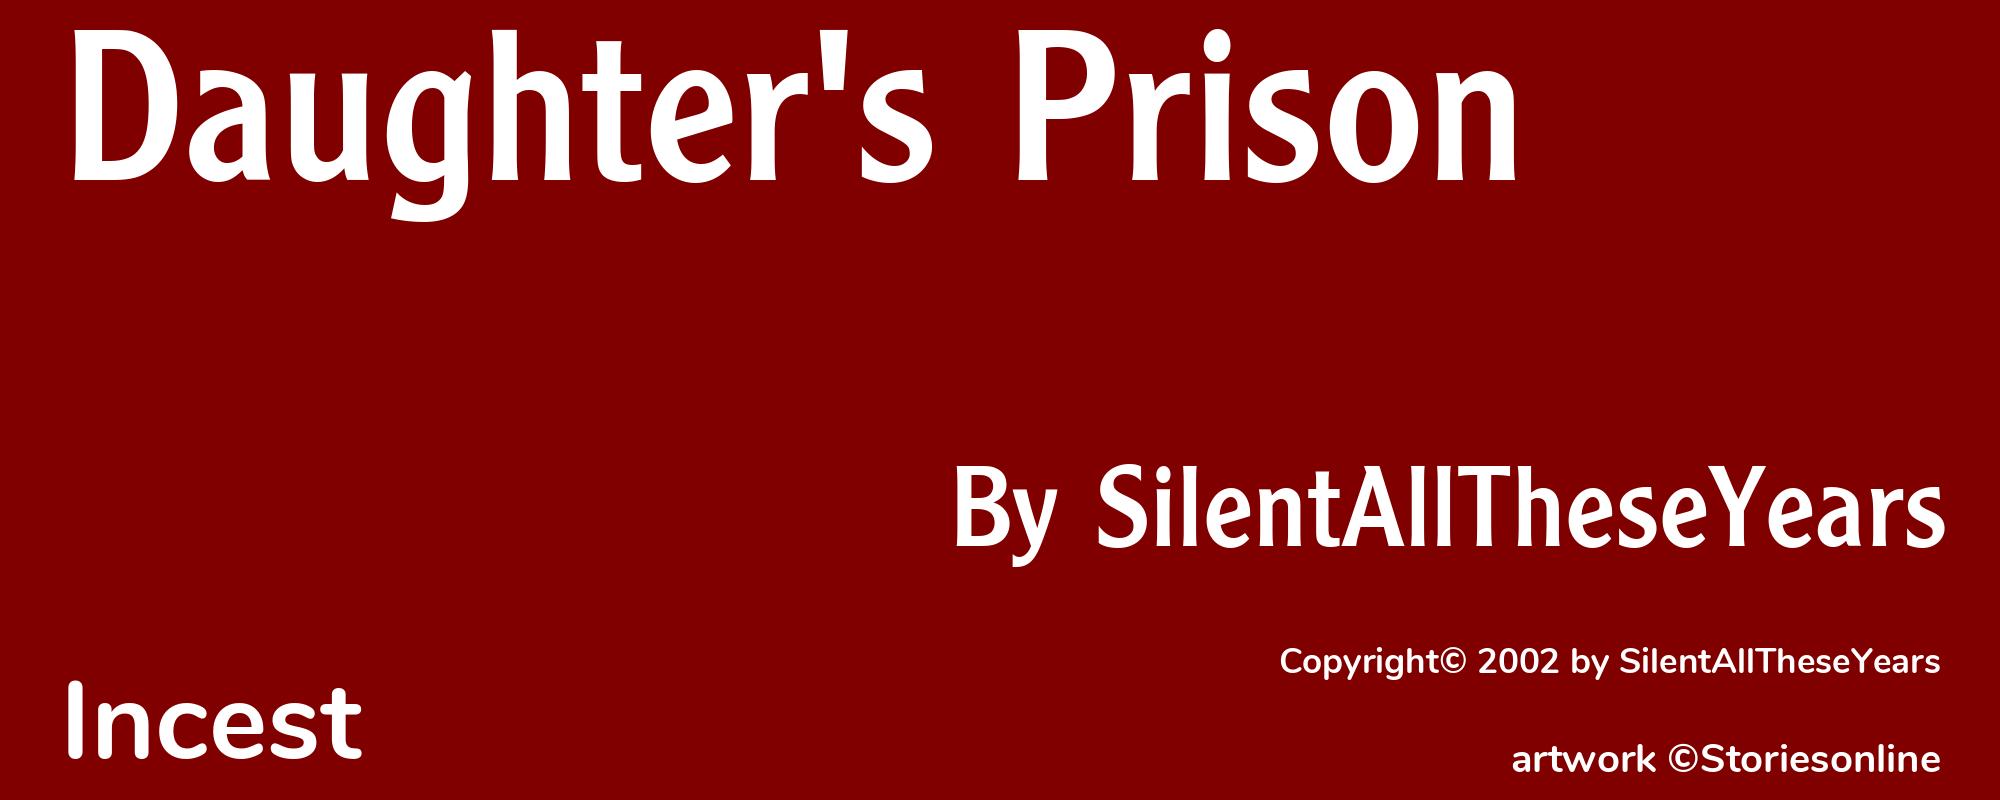 Daughter's Prison - Cover